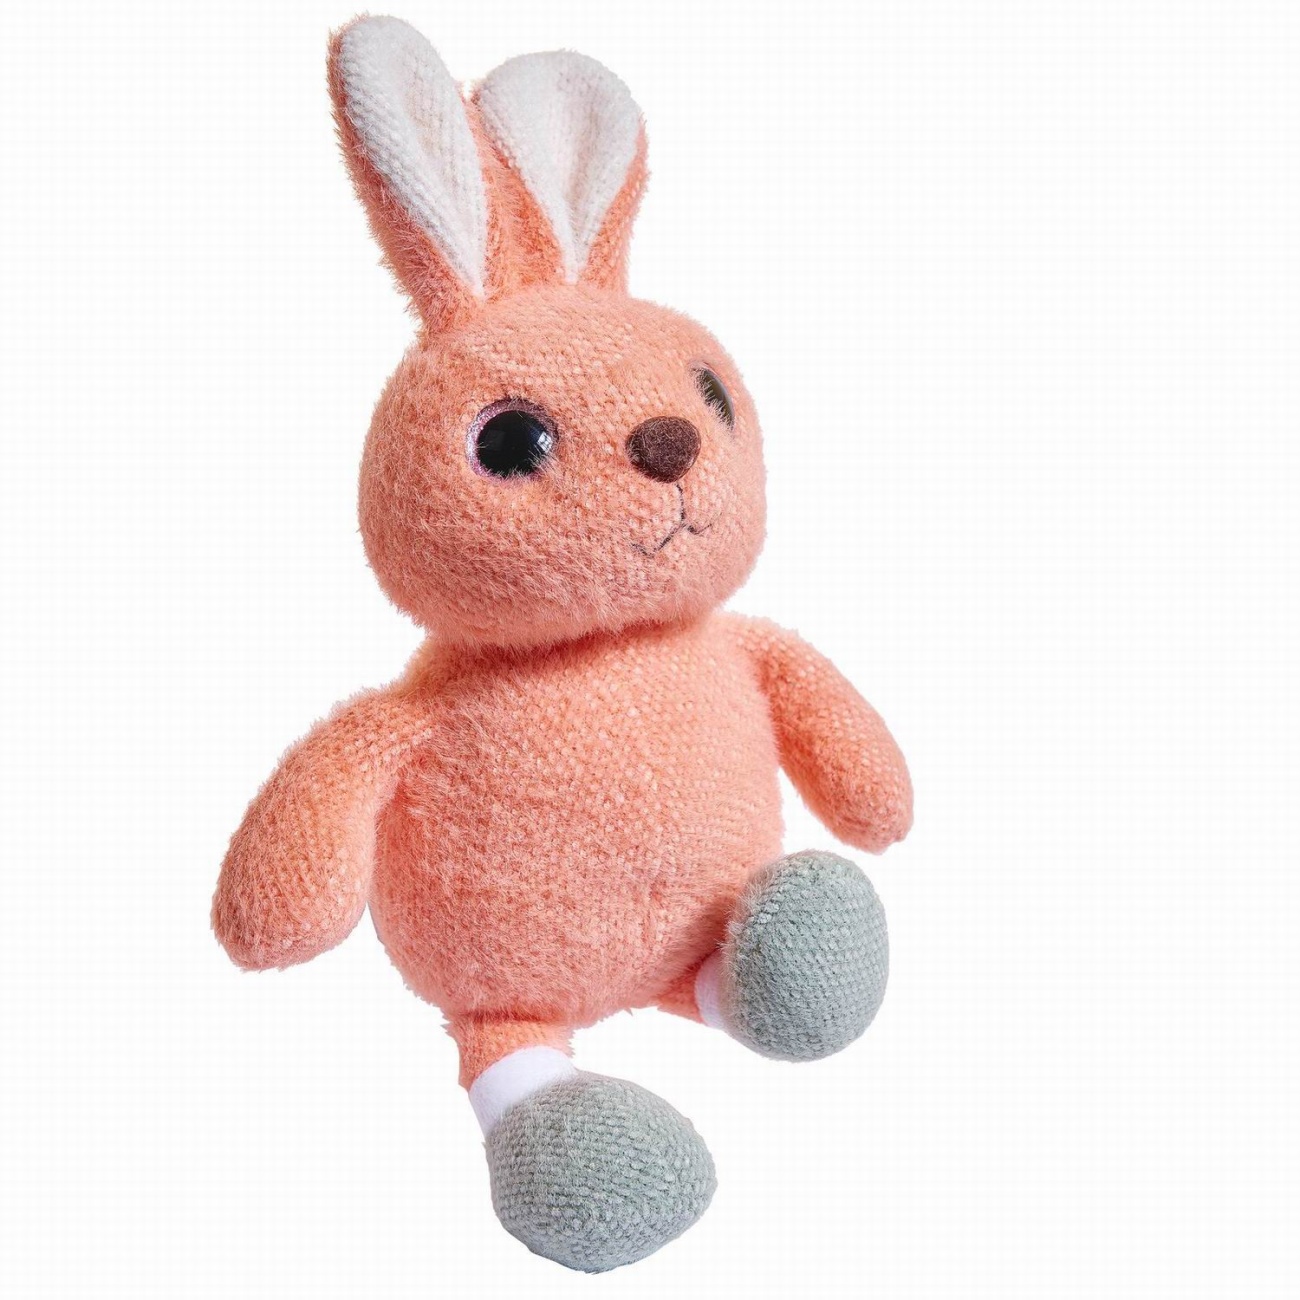 Мягкая игрушка Abtoys Knitted. Кролик вязаный, 20см. M4892